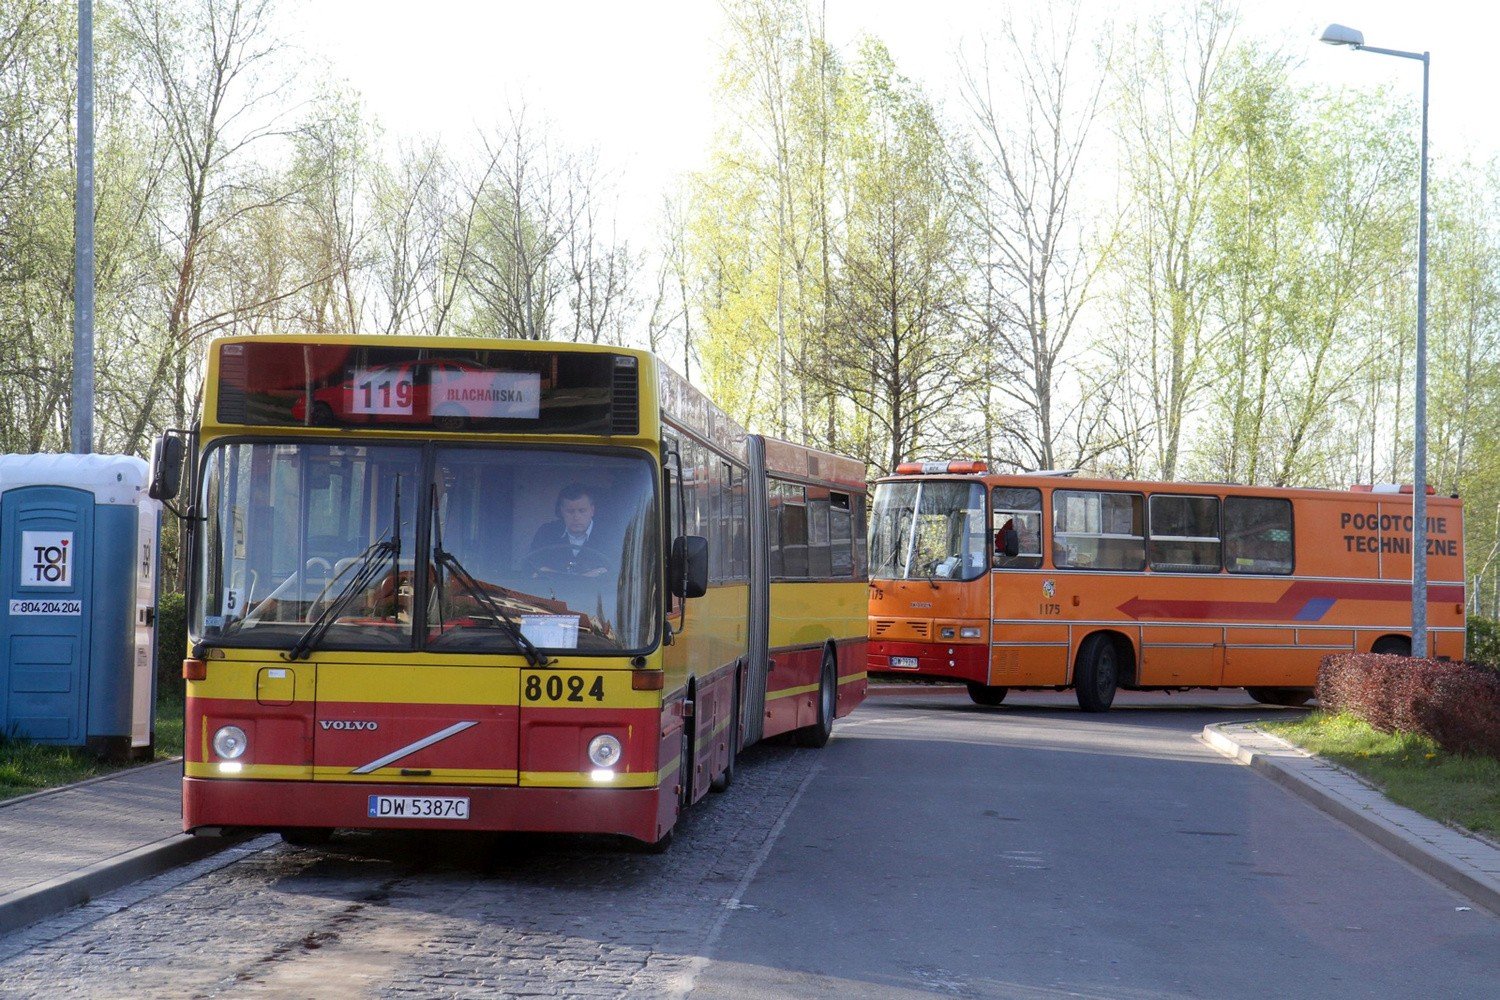 MPK Wrocław sprzedaje tramwaje i autobusy. Przejechały po